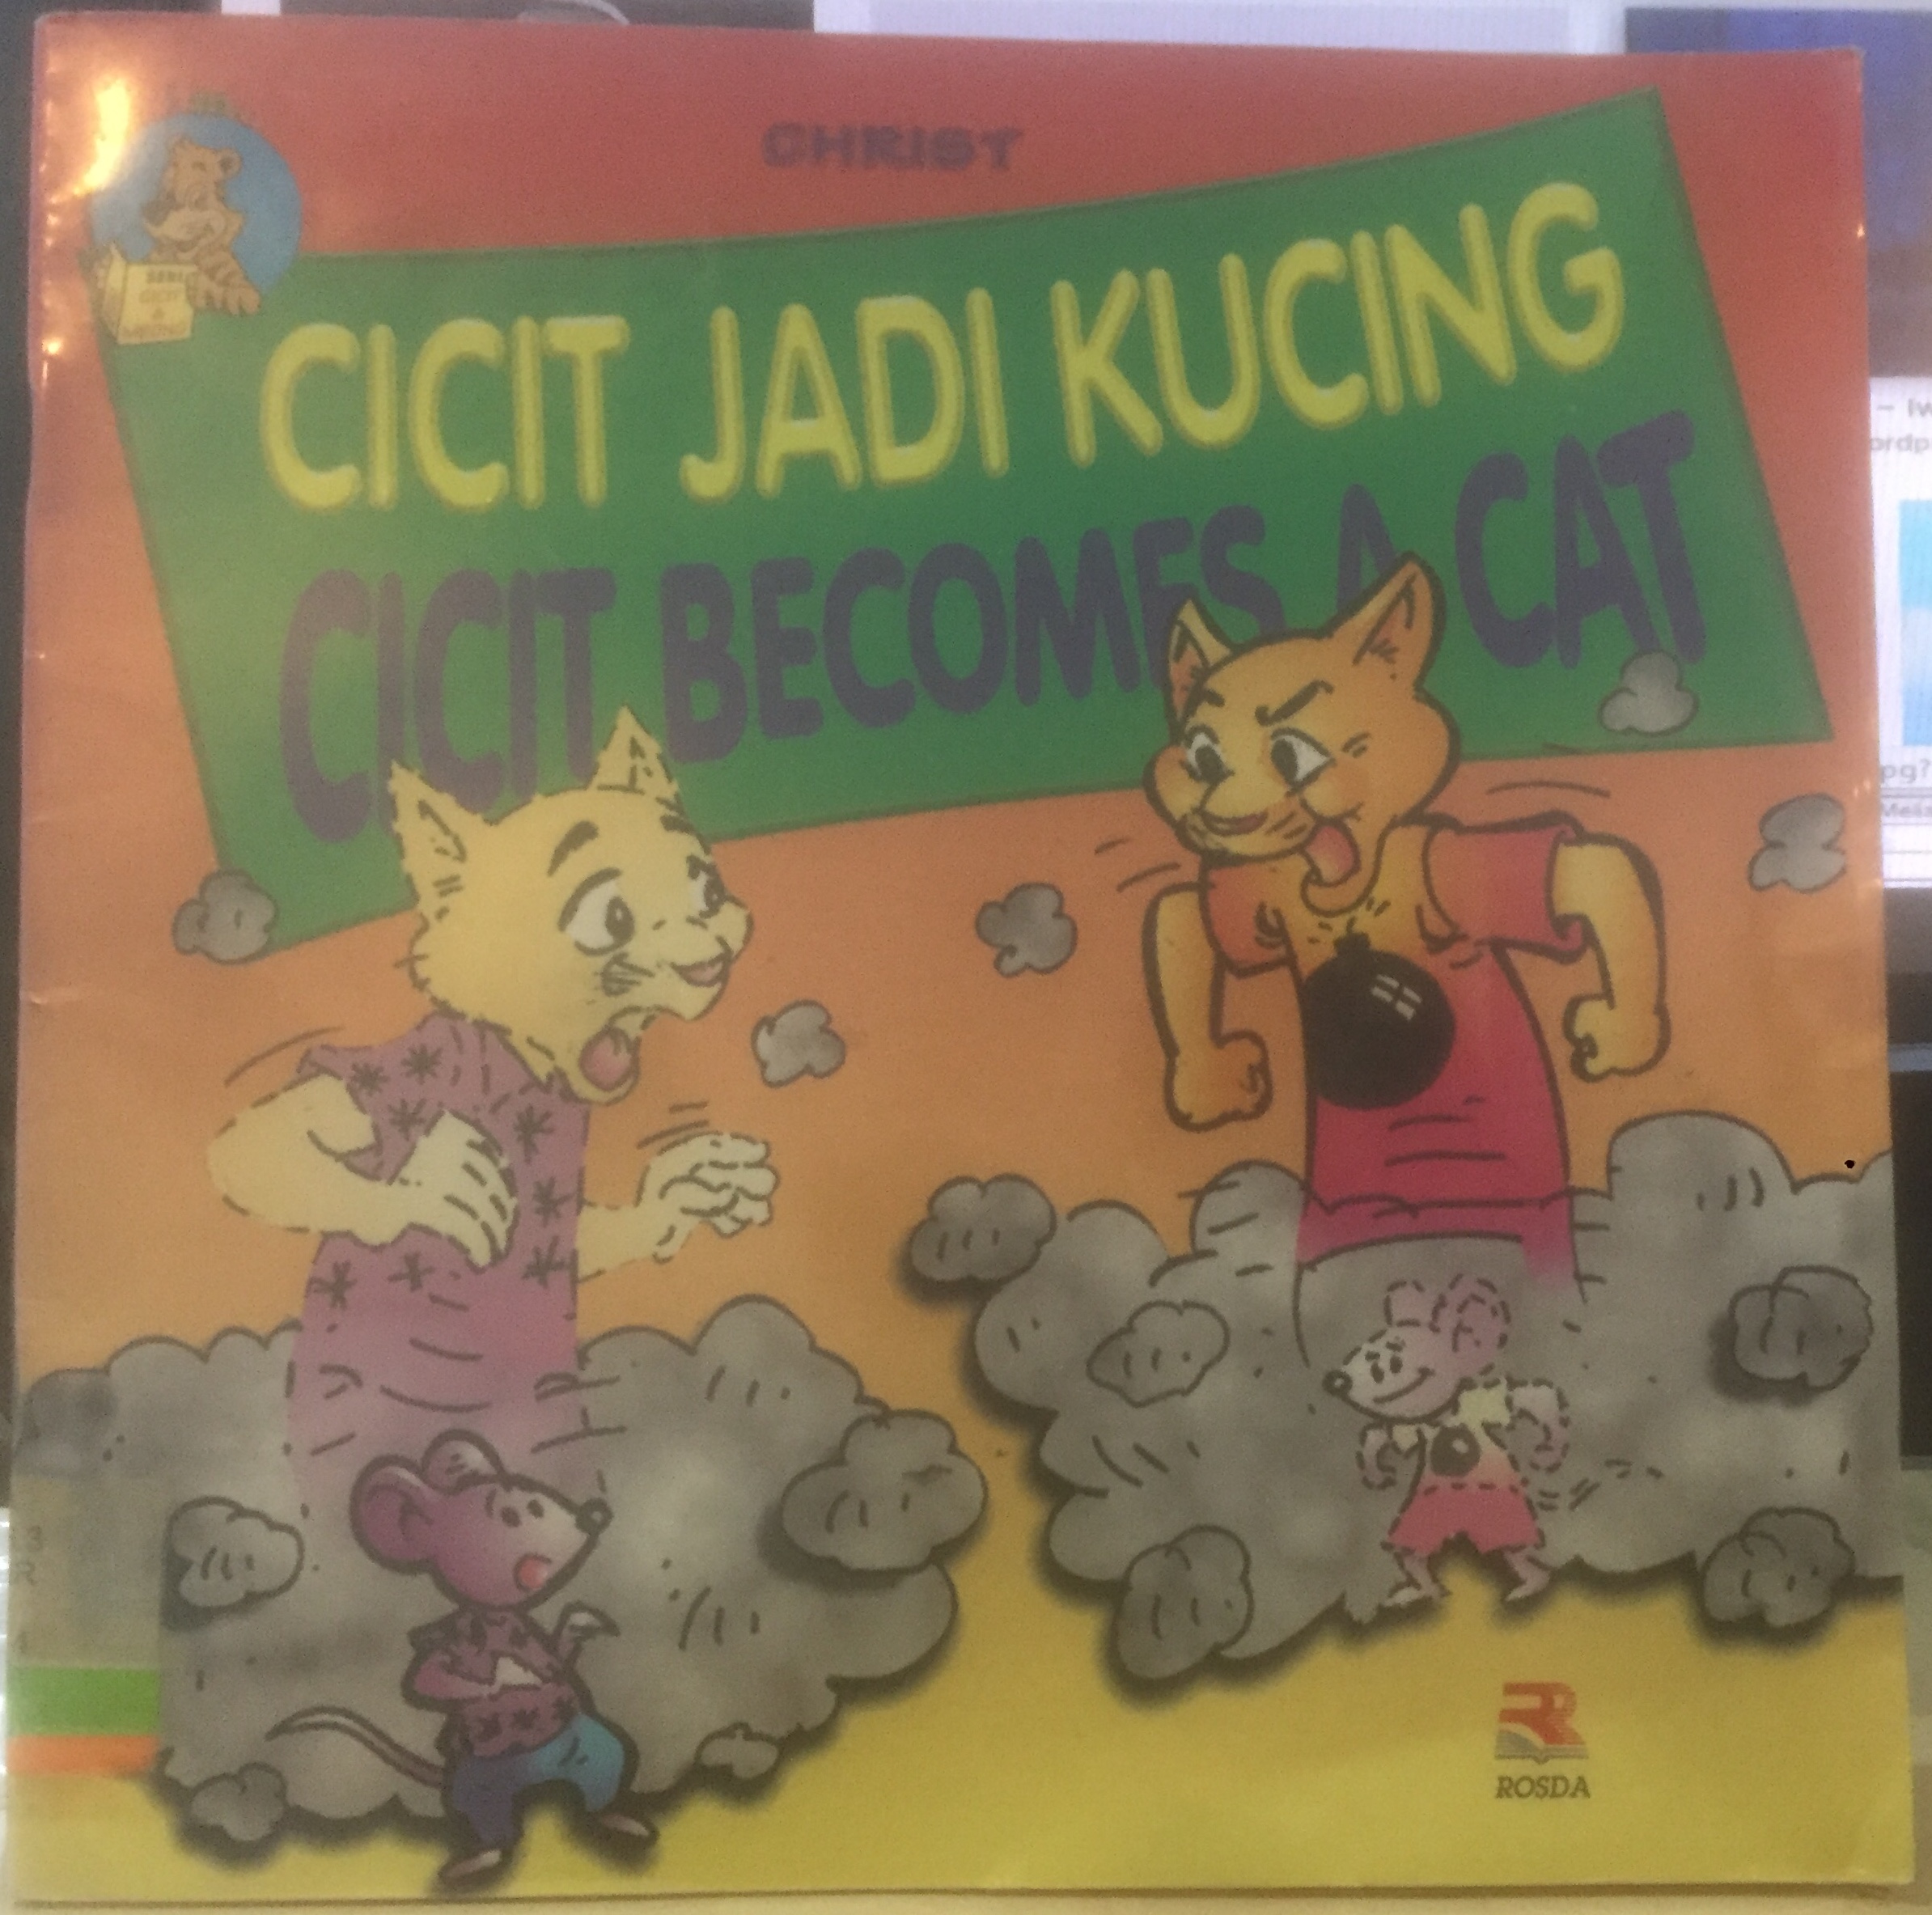 Cicit Jadi Kucing (Cicit Becomes a Cat)